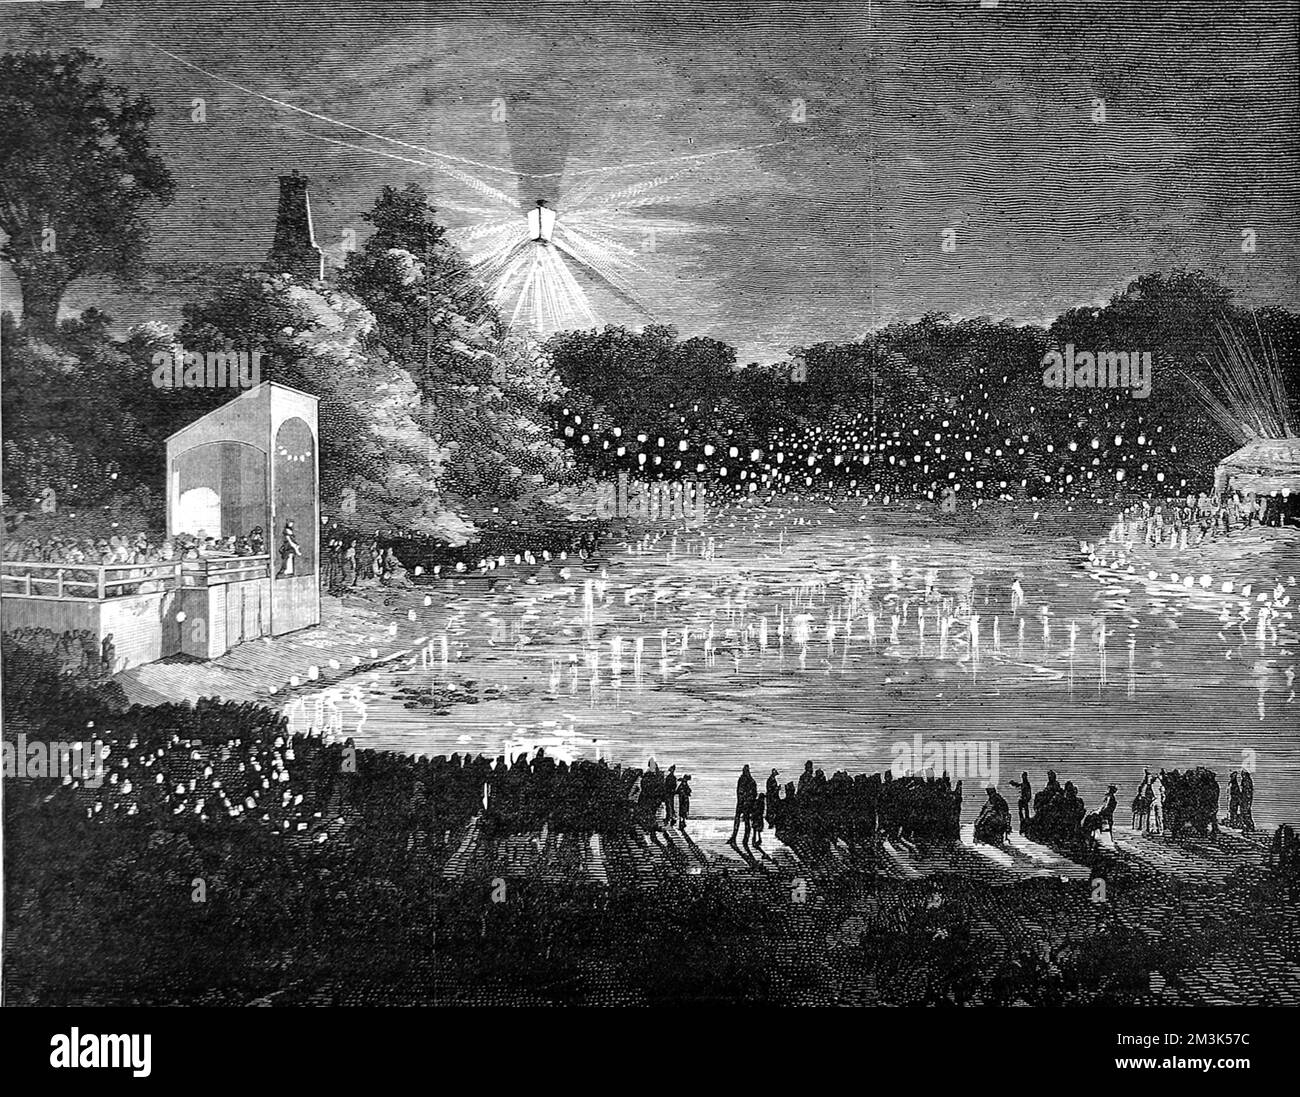 Eine große Menge viktorianischer Urlauber, die die Beleuchtung der Alexandra Palace Seen in London durch elektrisches Licht genießen. 1880 Stockfoto